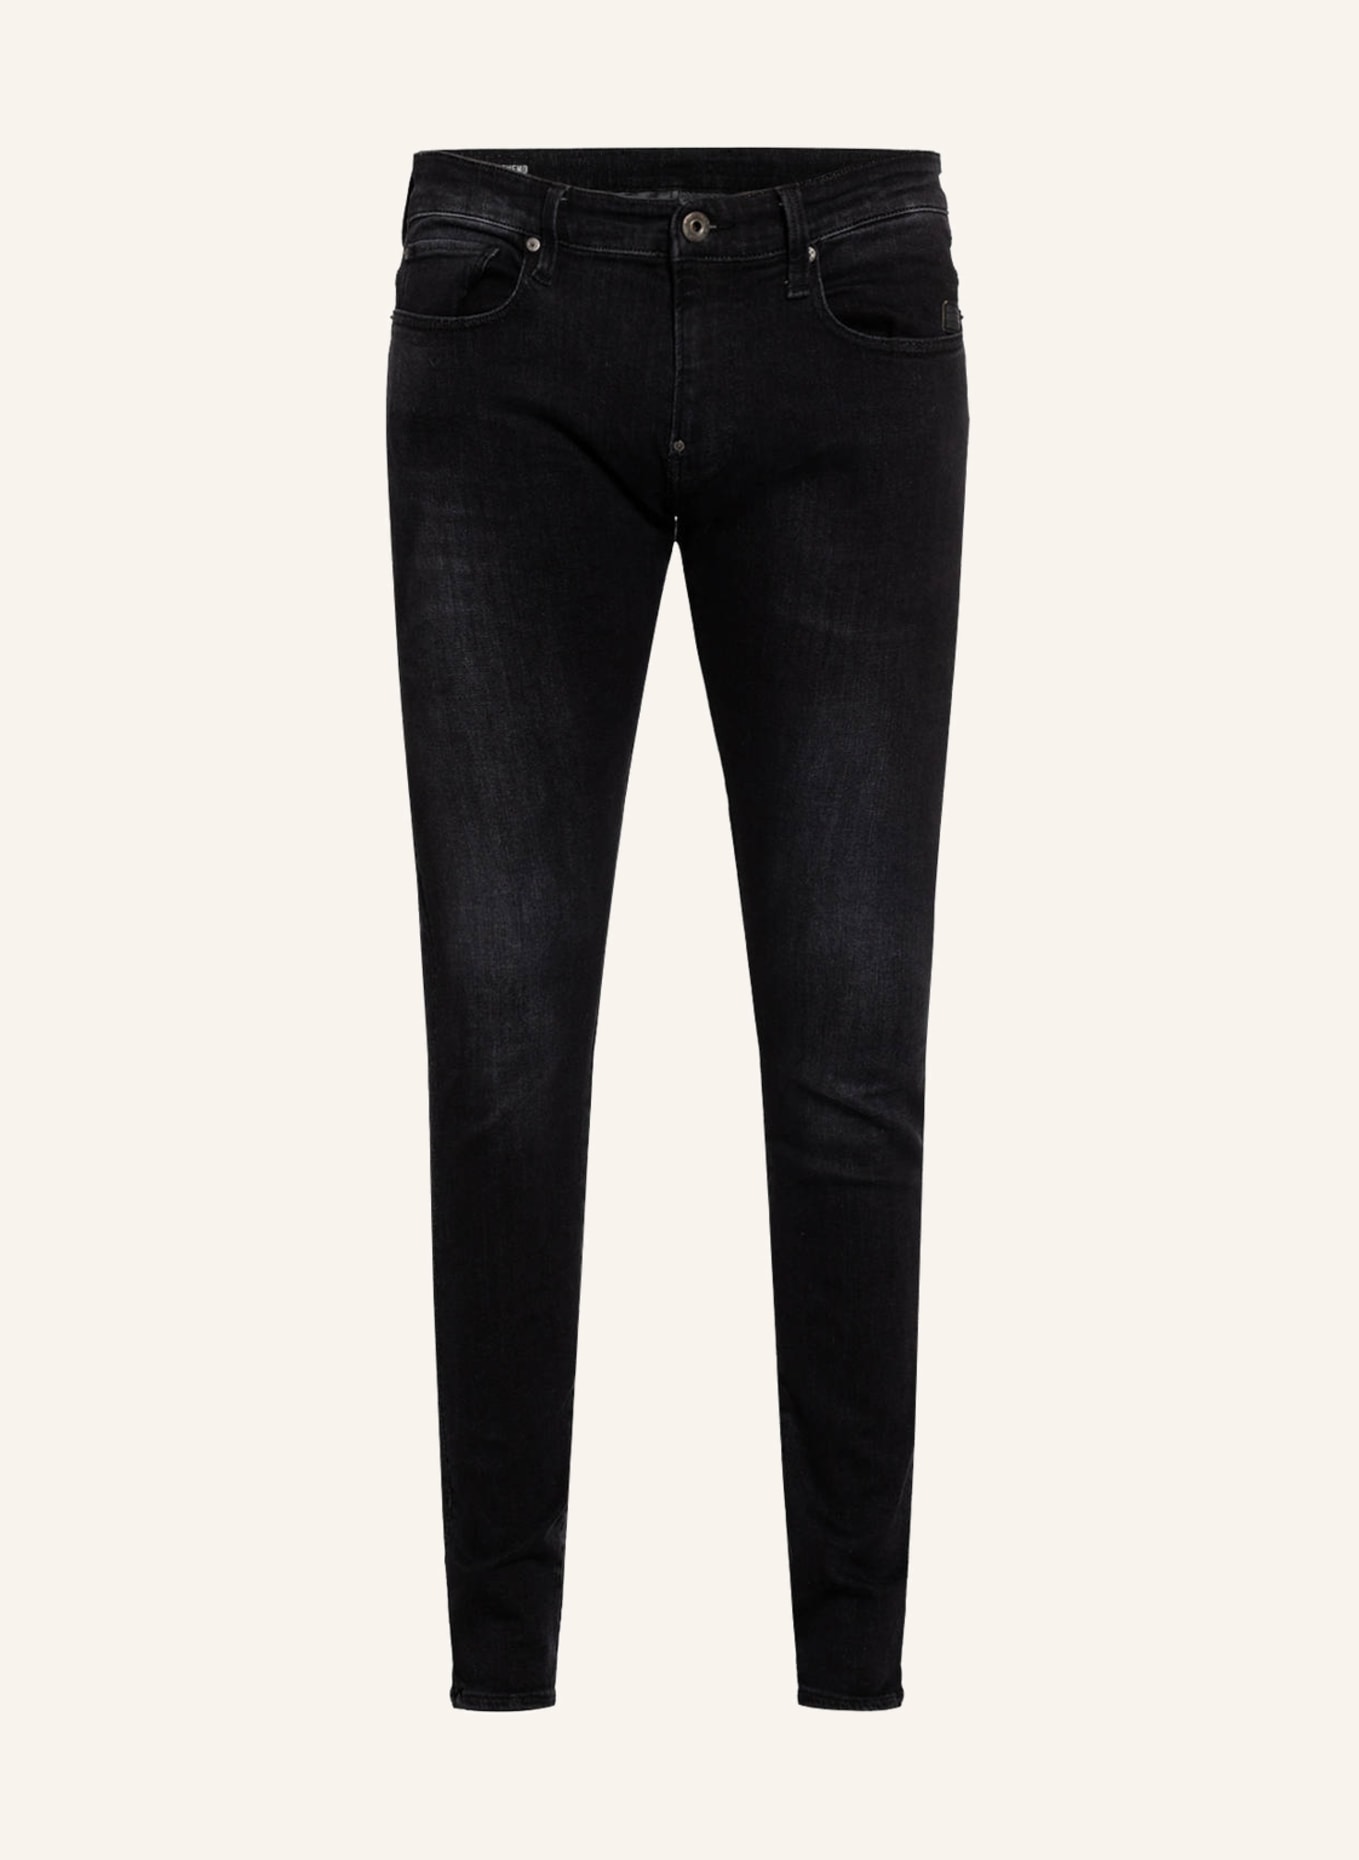 G-Star RAW Jeans REVEND Skinny Fit, Farbe: A592 medium aged faded (Bild 1)